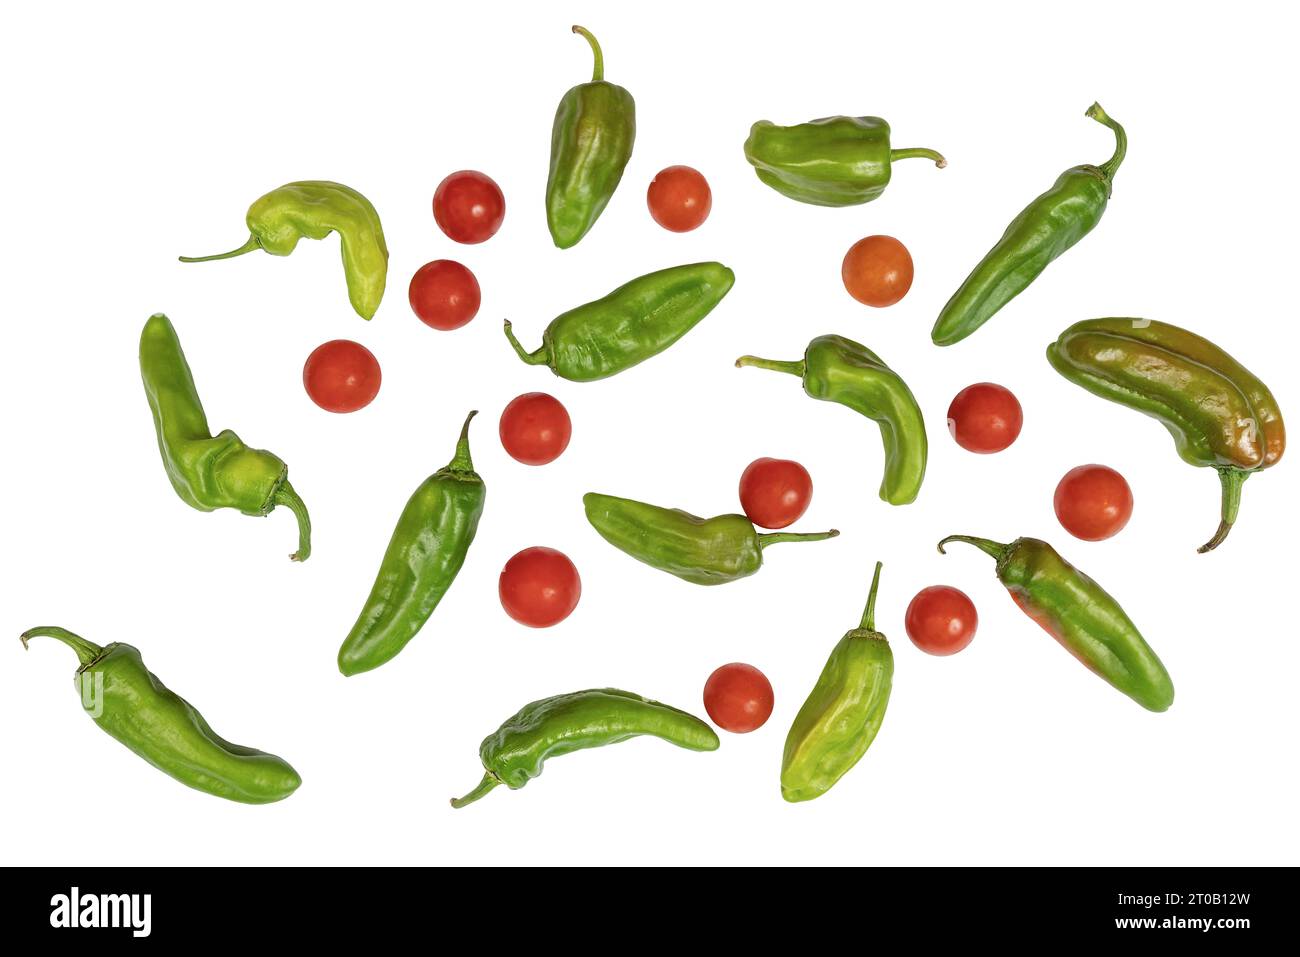 Eine Zusammensetzung einiger grüner Paprika und Tomaten auf transparentem Hintergrund Stockfoto